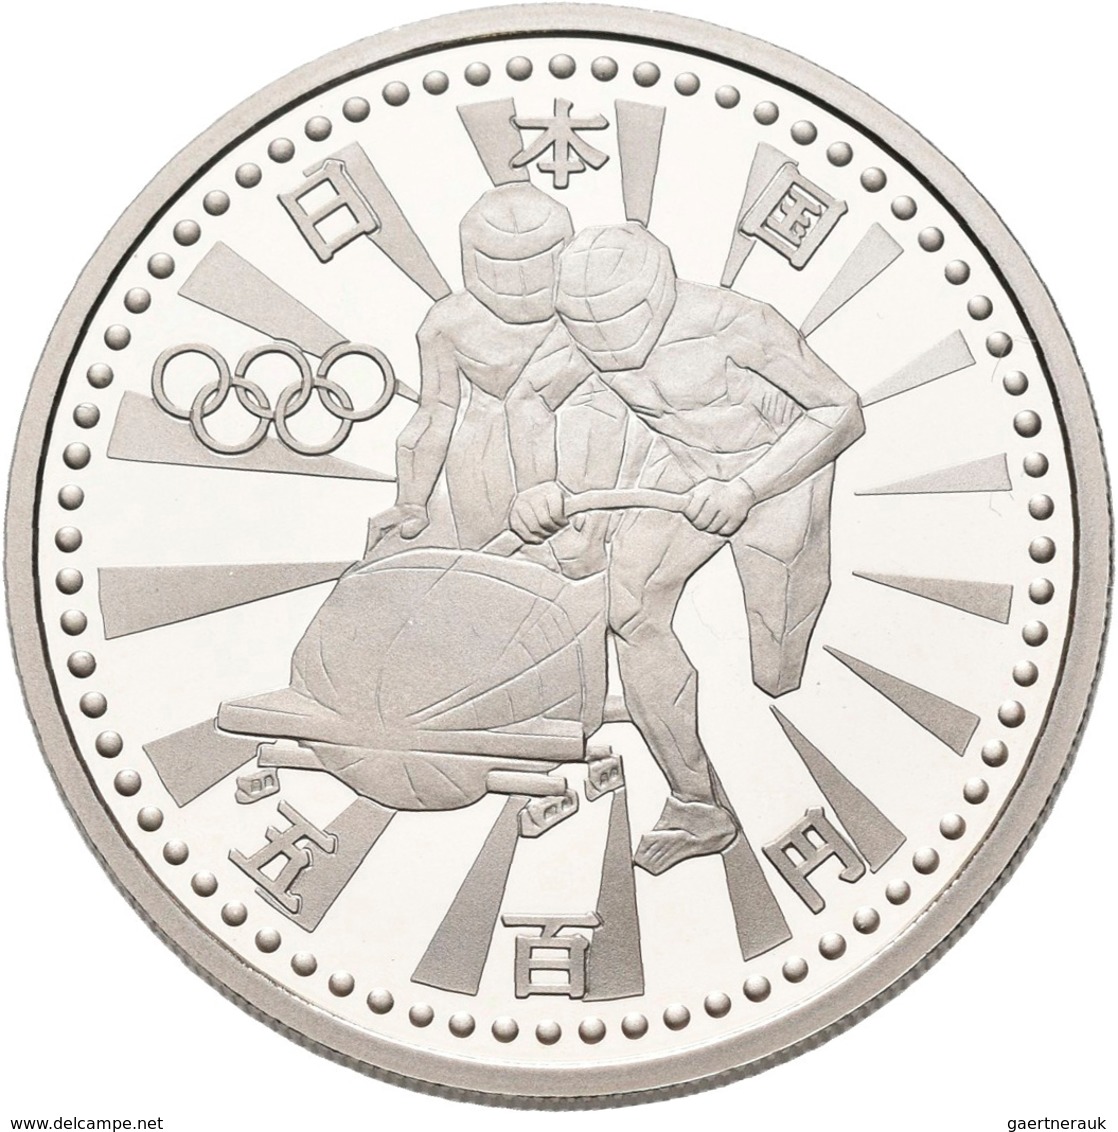 Japan: Olympische Winterspiele Nagano 1998: Set 3 x 500 Yen CN Münzen plus 3 x 5.000 Yen Silber Münz